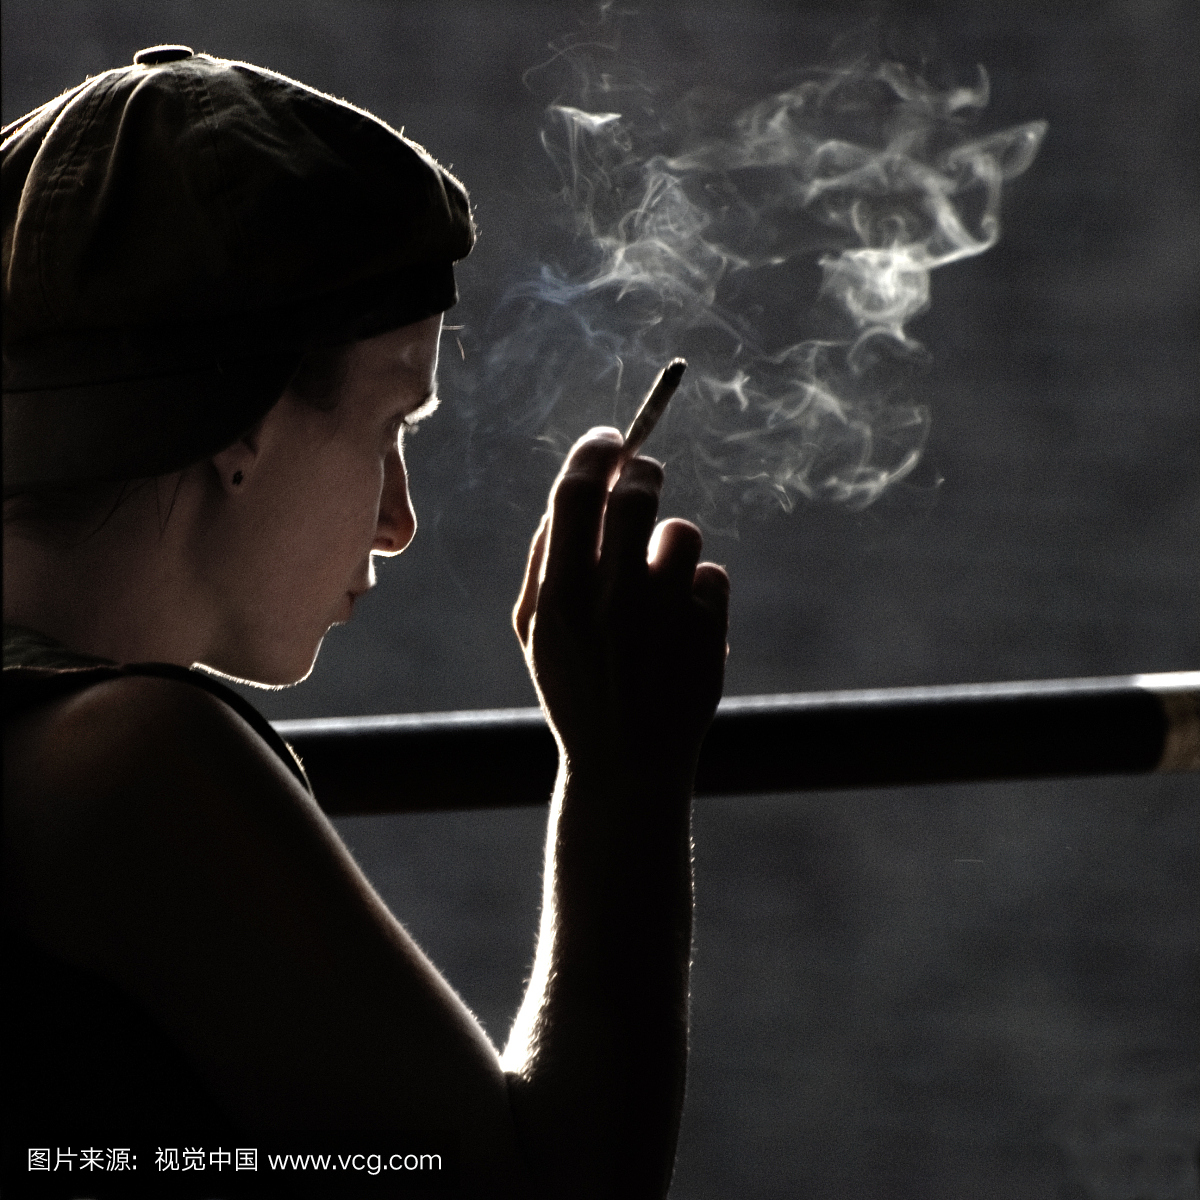 一个女孩吸烟